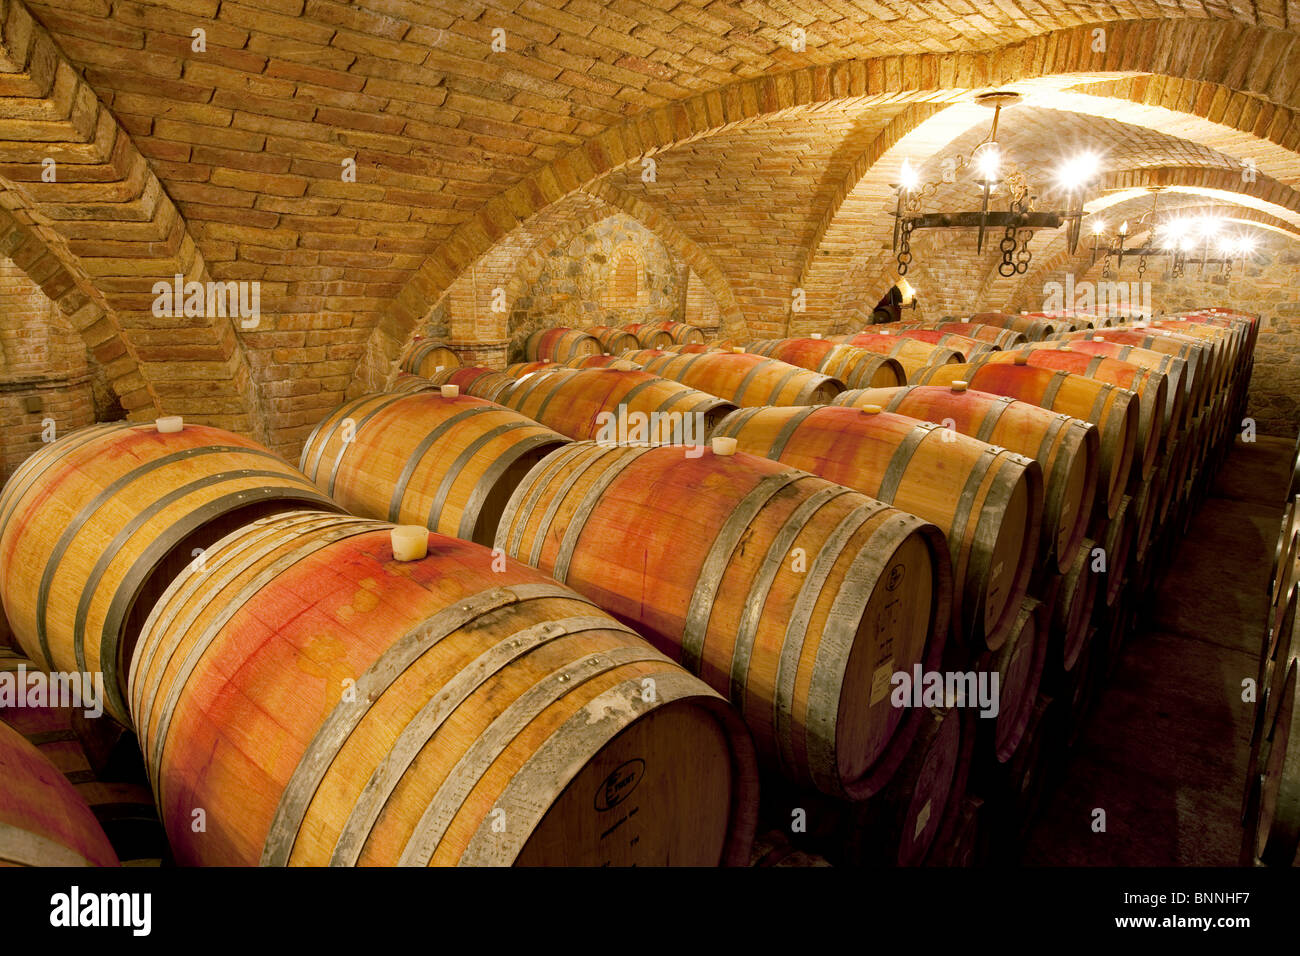 Alterung in Fässern im Keller Wein. Castello di Amerorosa. Napa Valley, Kalifornien. Eigenschaft relased Stockfoto